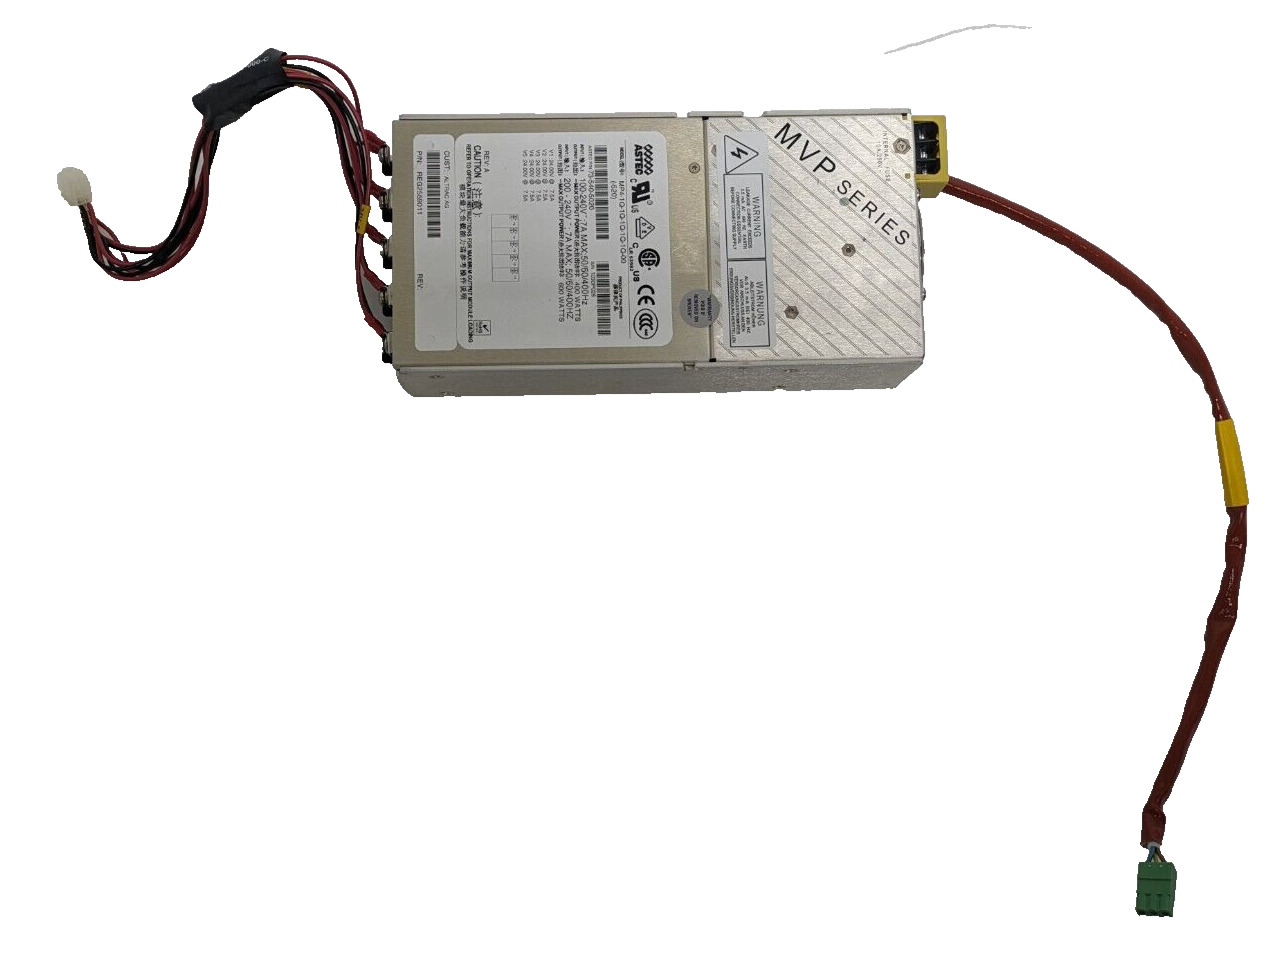 Power Supply ASTEC 73-540-5020 Model: MP4-1Q-1Q-1Q-1Q-1Q-00 520) 250V